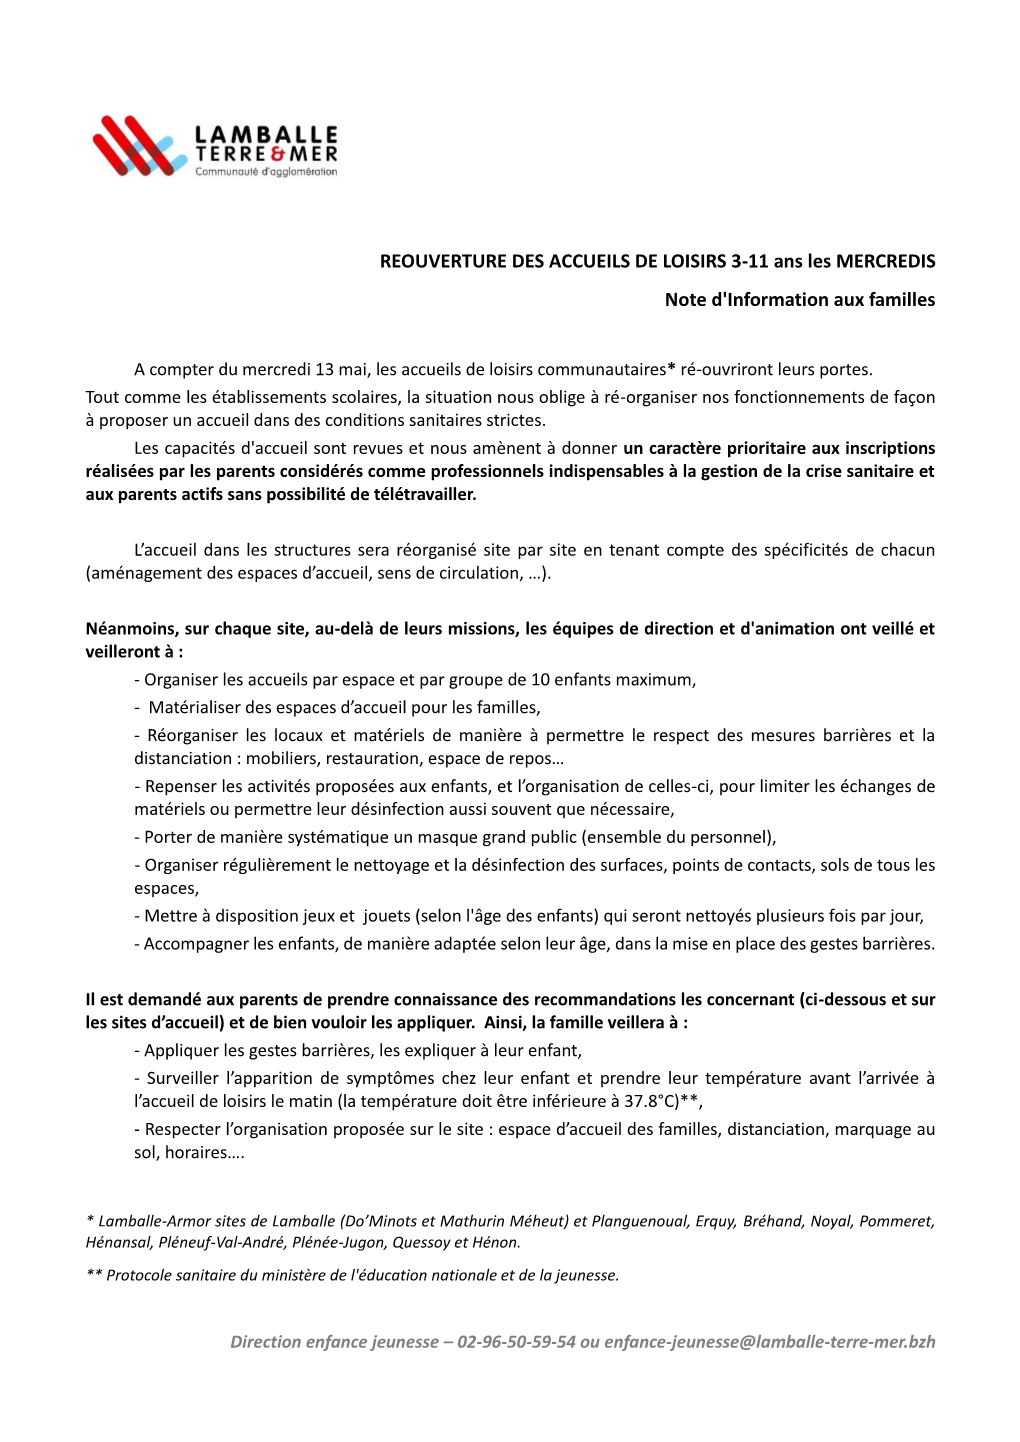 REOUVERTURE DES ACCUEILS DE LOISIRS 3-11 Ans Les MERCREDIS Note D'information Aux Familles